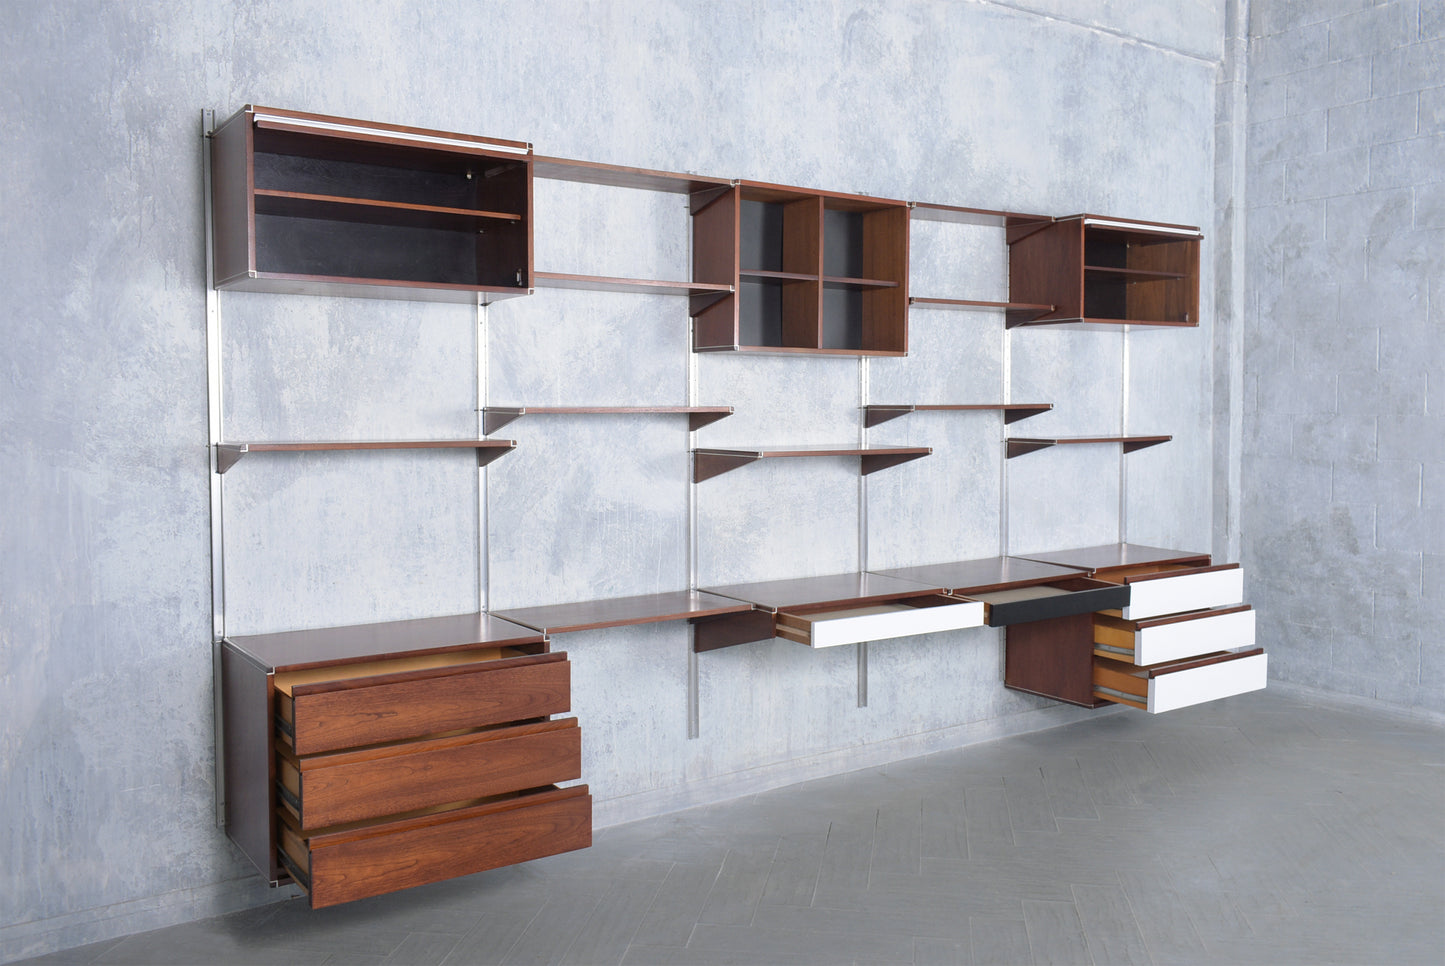 1960s Danish Modern Mahogany Bookshelf: Restored Mid-Century Wall Unit